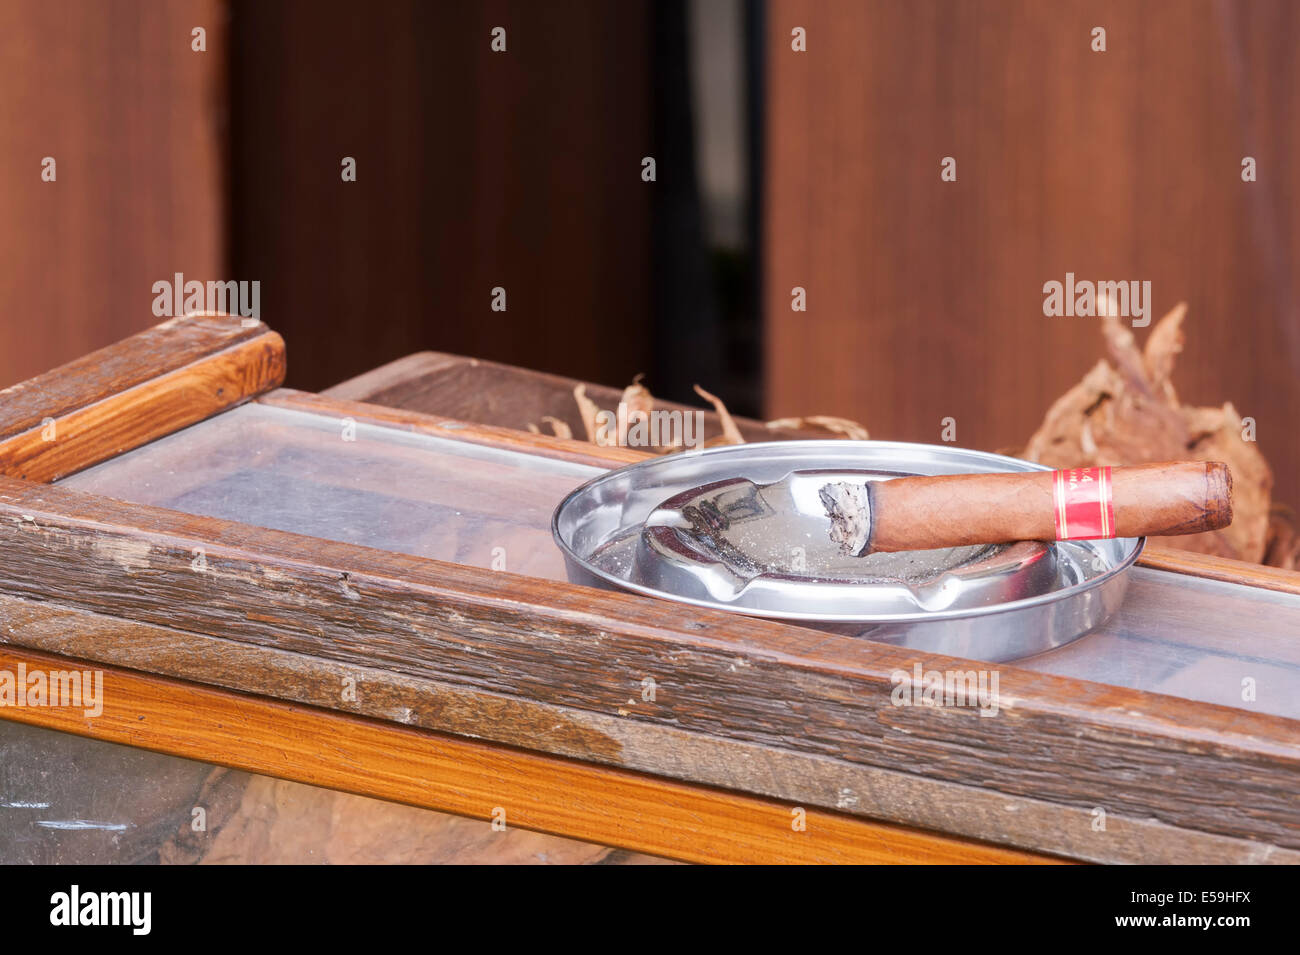 Recién liados a mano y encendió cigarro habano en banco de rodillos con hojas de tabaco en segundo plano. Foto de stock